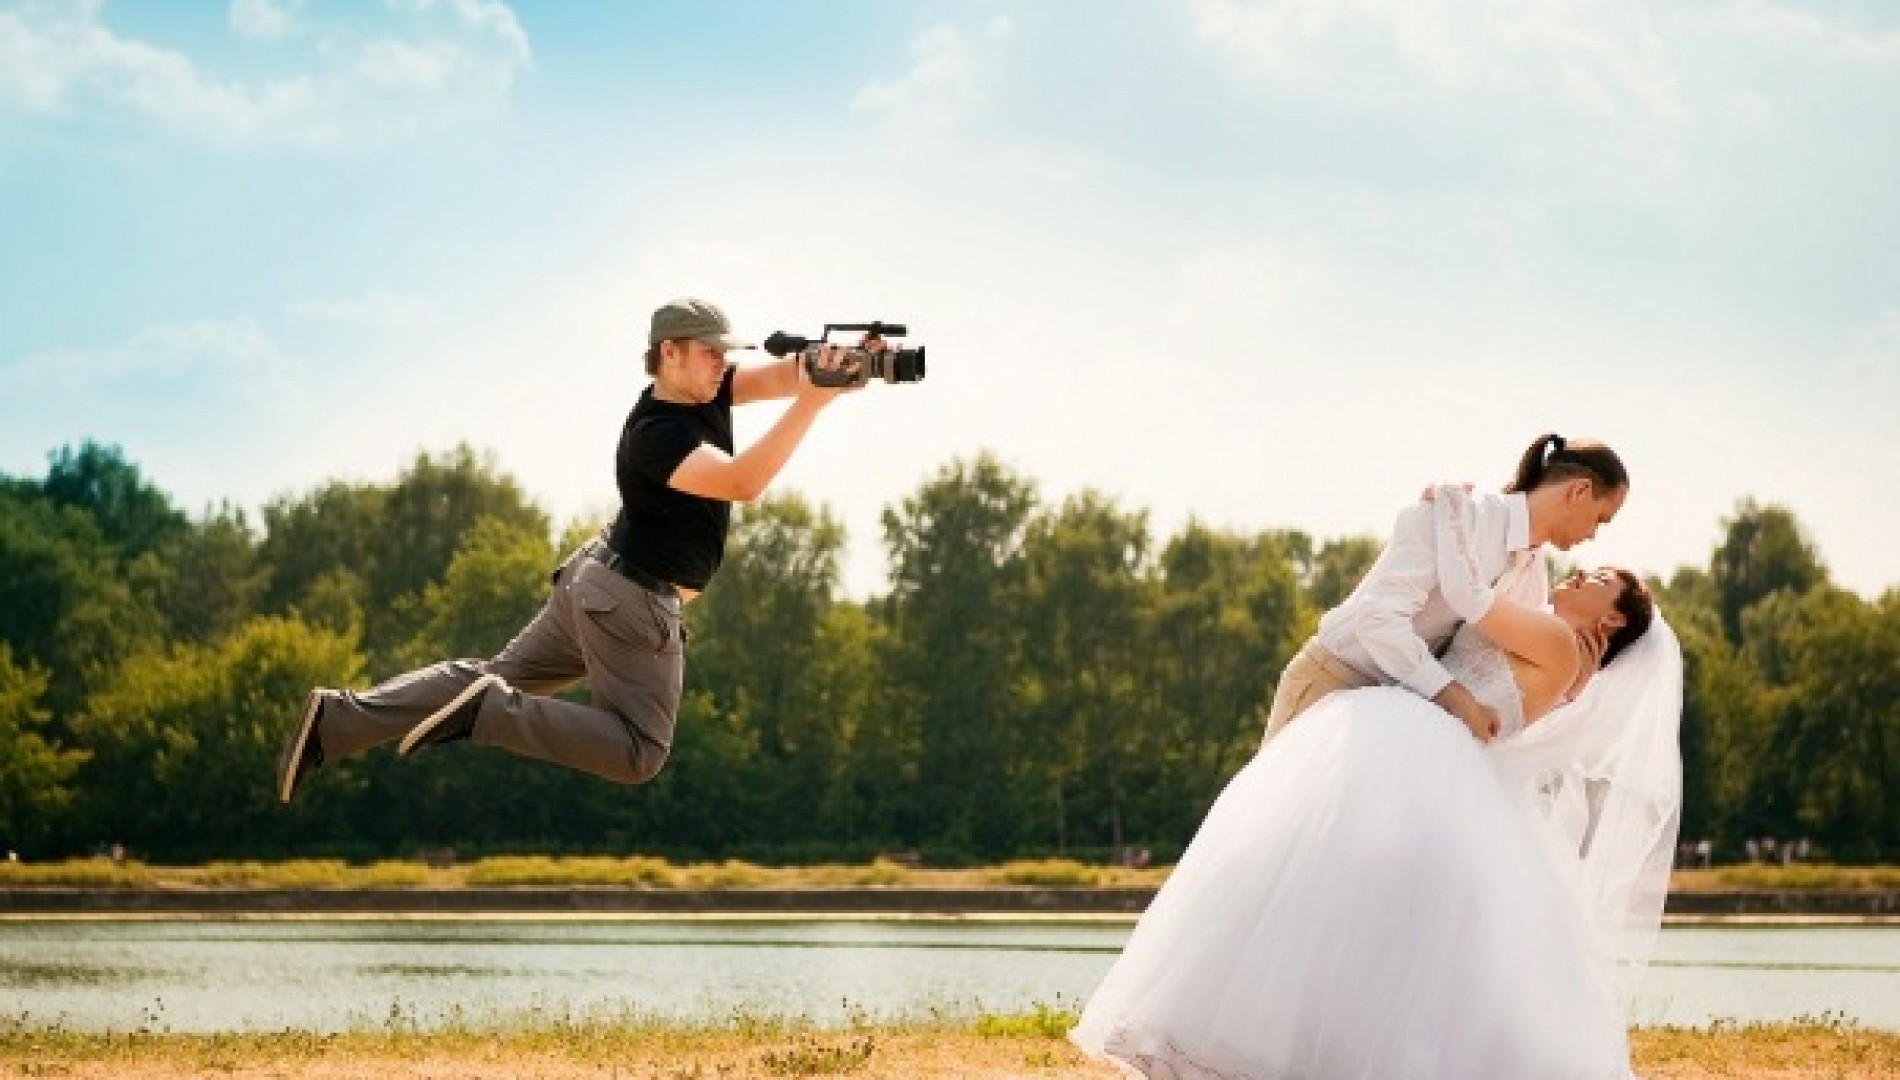 Фото и видео изображения. Фотограф на свадьбу. Фотограф и видеооператор на свадьбу. Свадебная фотосессия. Видеосъемка свадьбы.